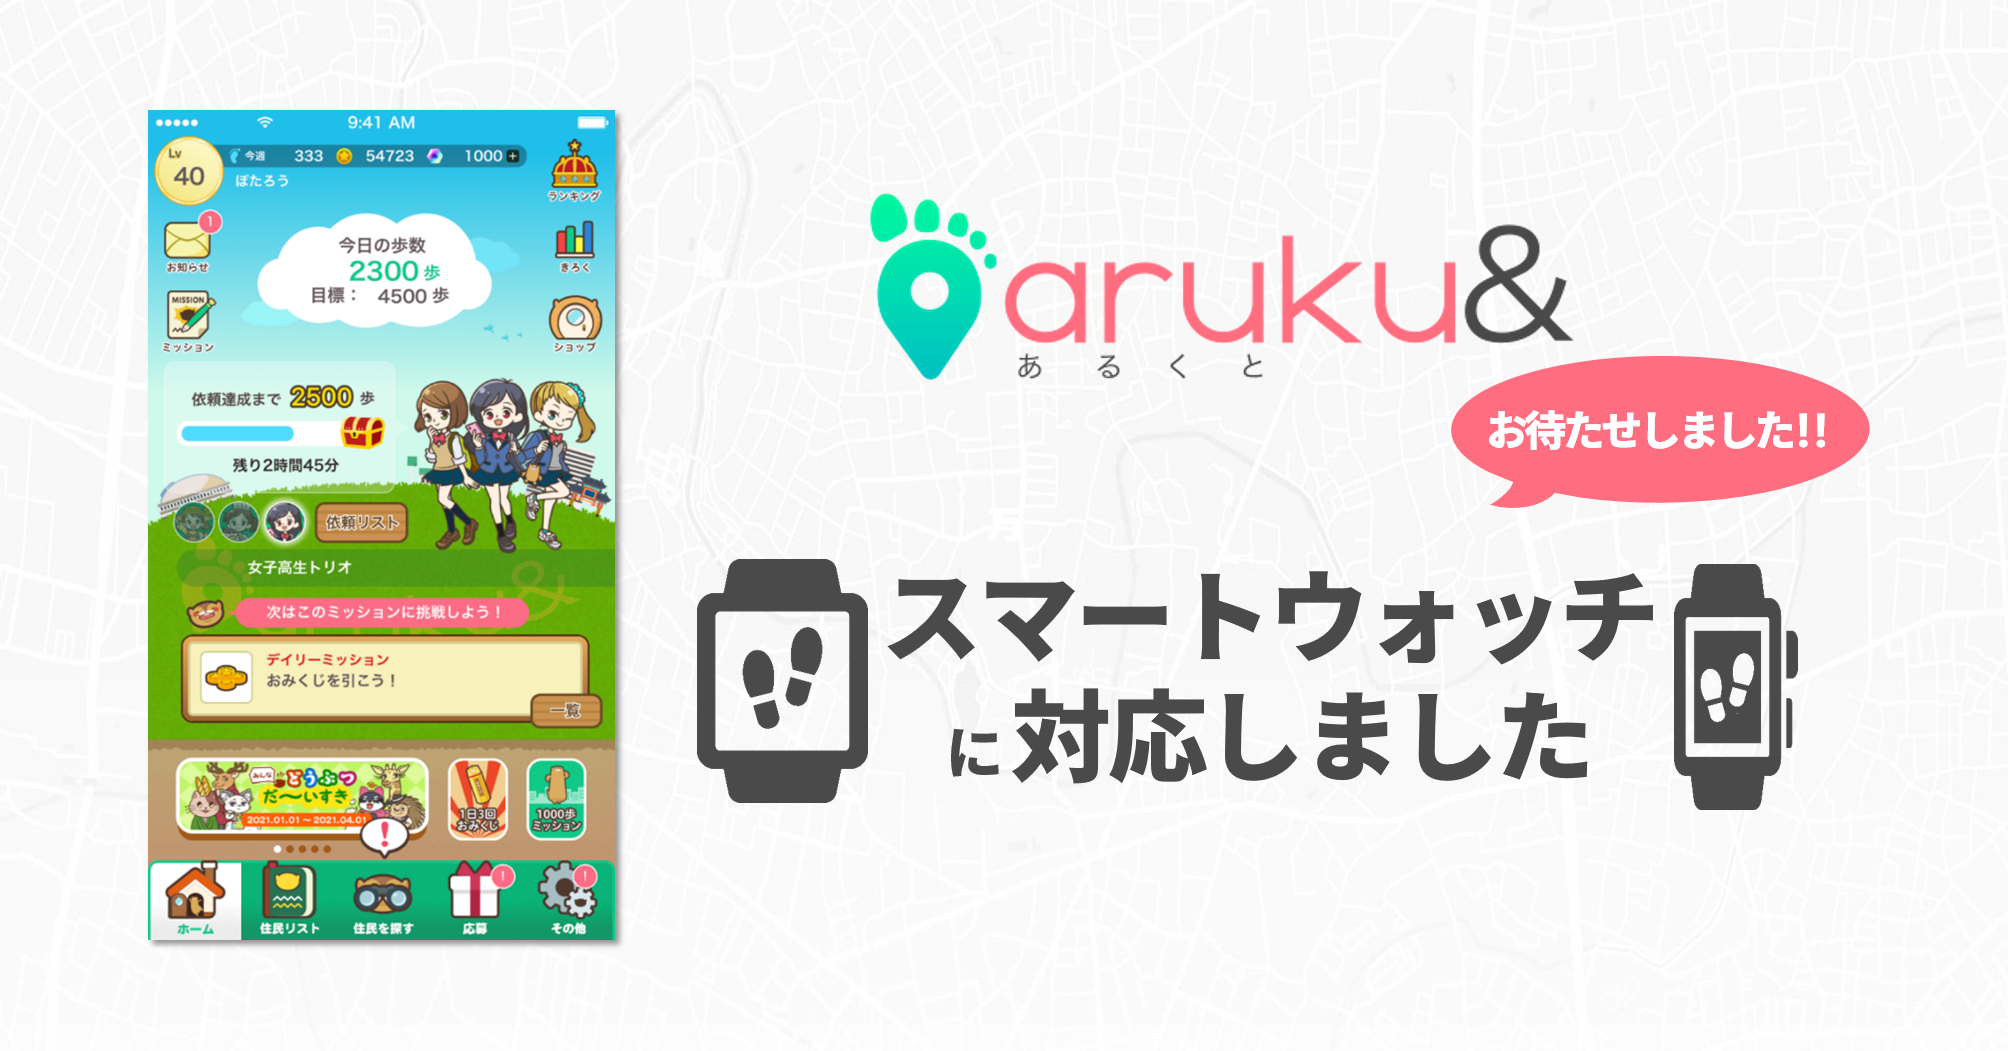 ウォーキングアプリ「aruku&」がスマートウォッチに対応